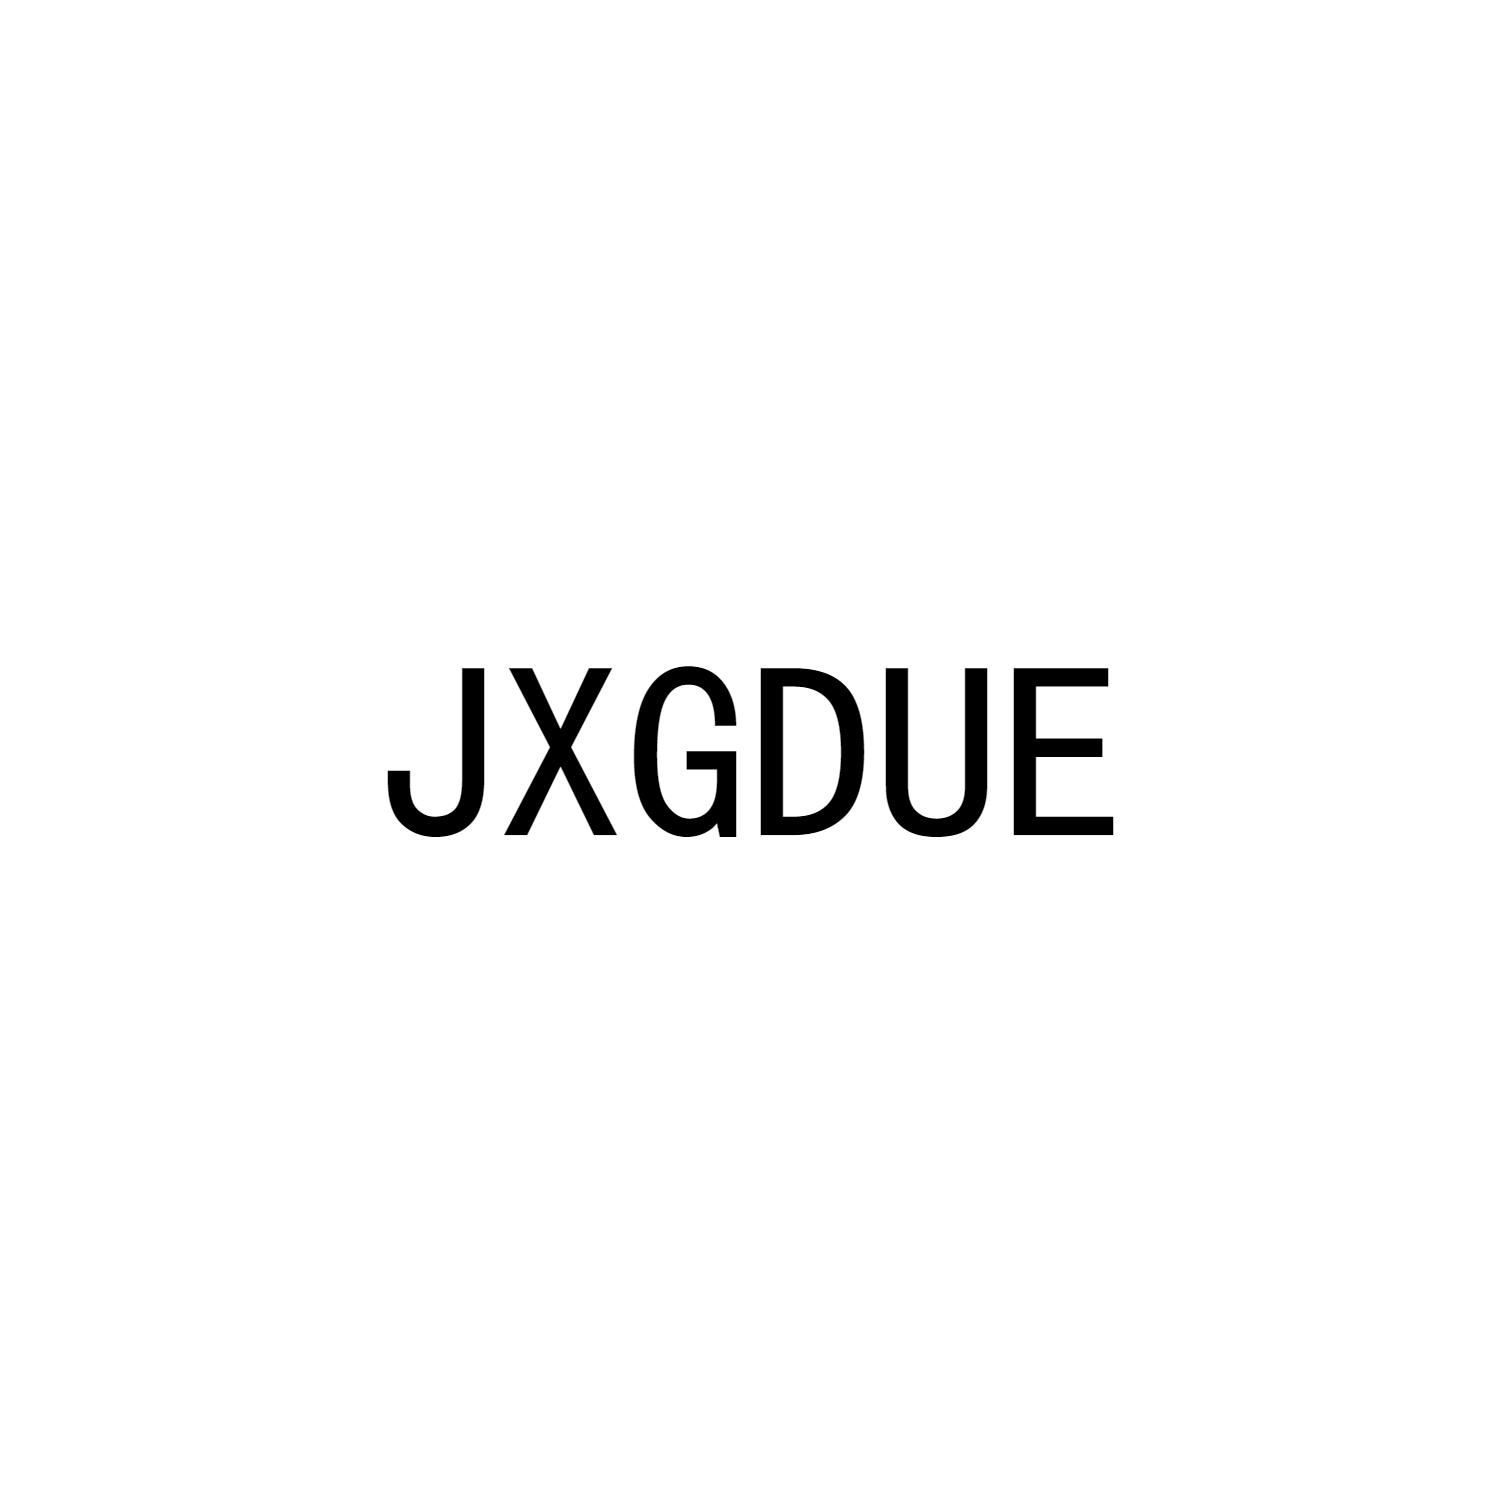 JXGDUE